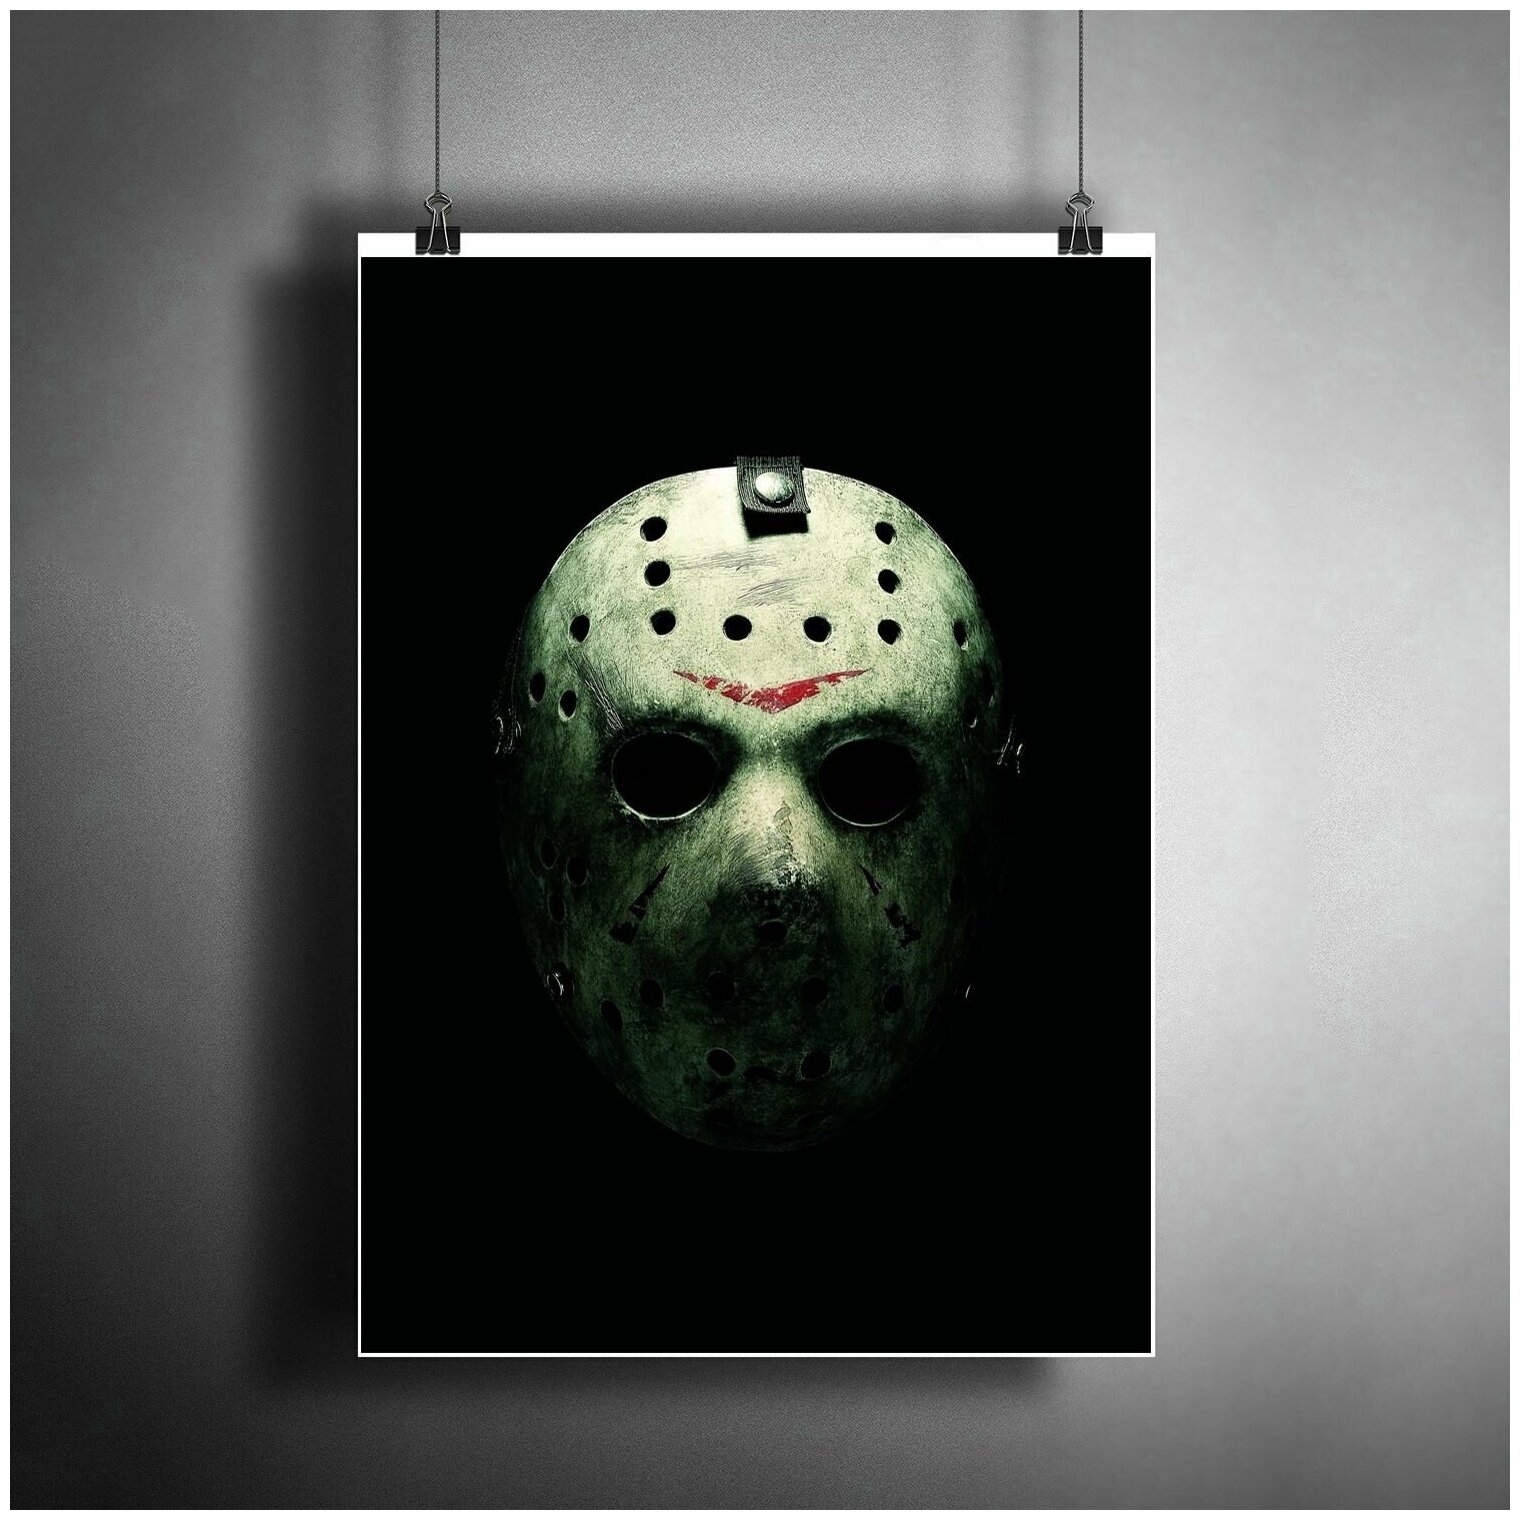 Постер плакат для интерьера "Фильм ужасов: Пятница 13-е. (Friday The 13th) Хэллоуин" / Декор дома, офиса, комнаты, квартиры, детской A3 (297 x 420 мм)